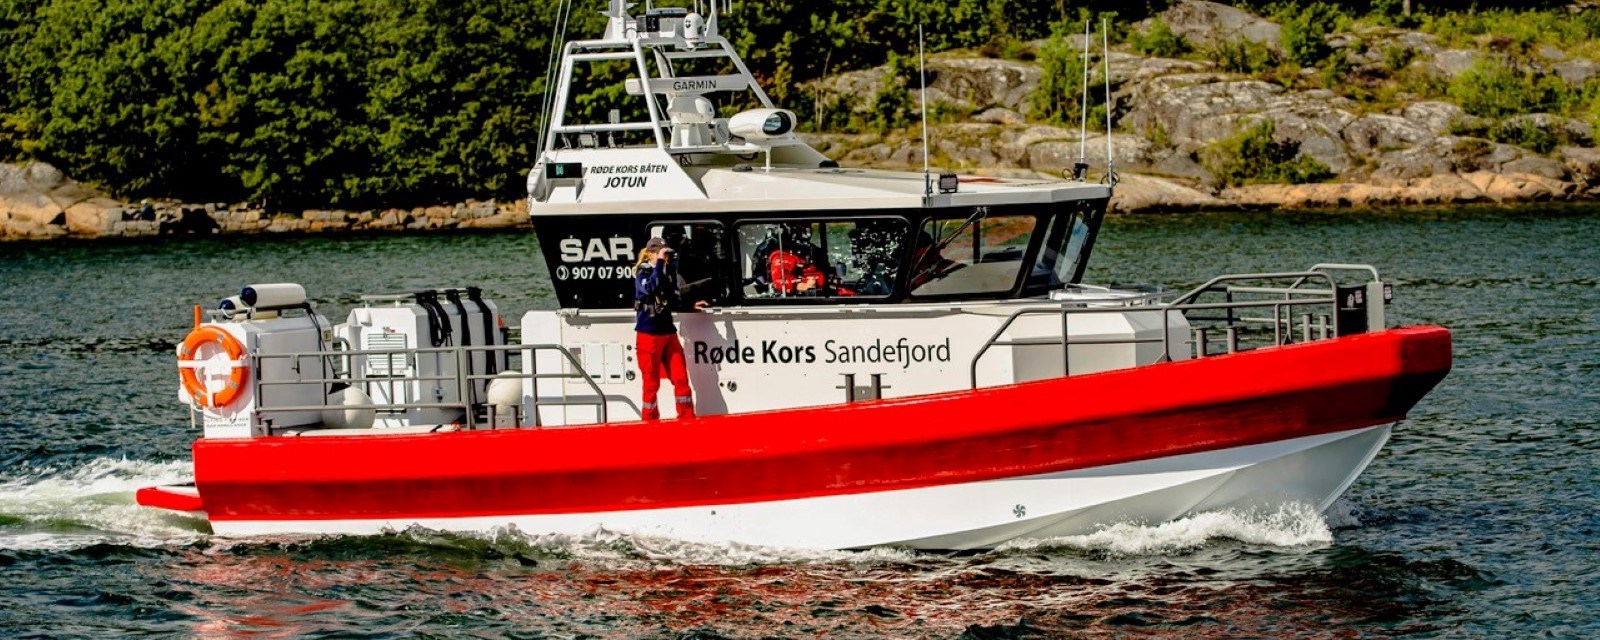 Røde Kors redningsbåt patruljerer langs kysten